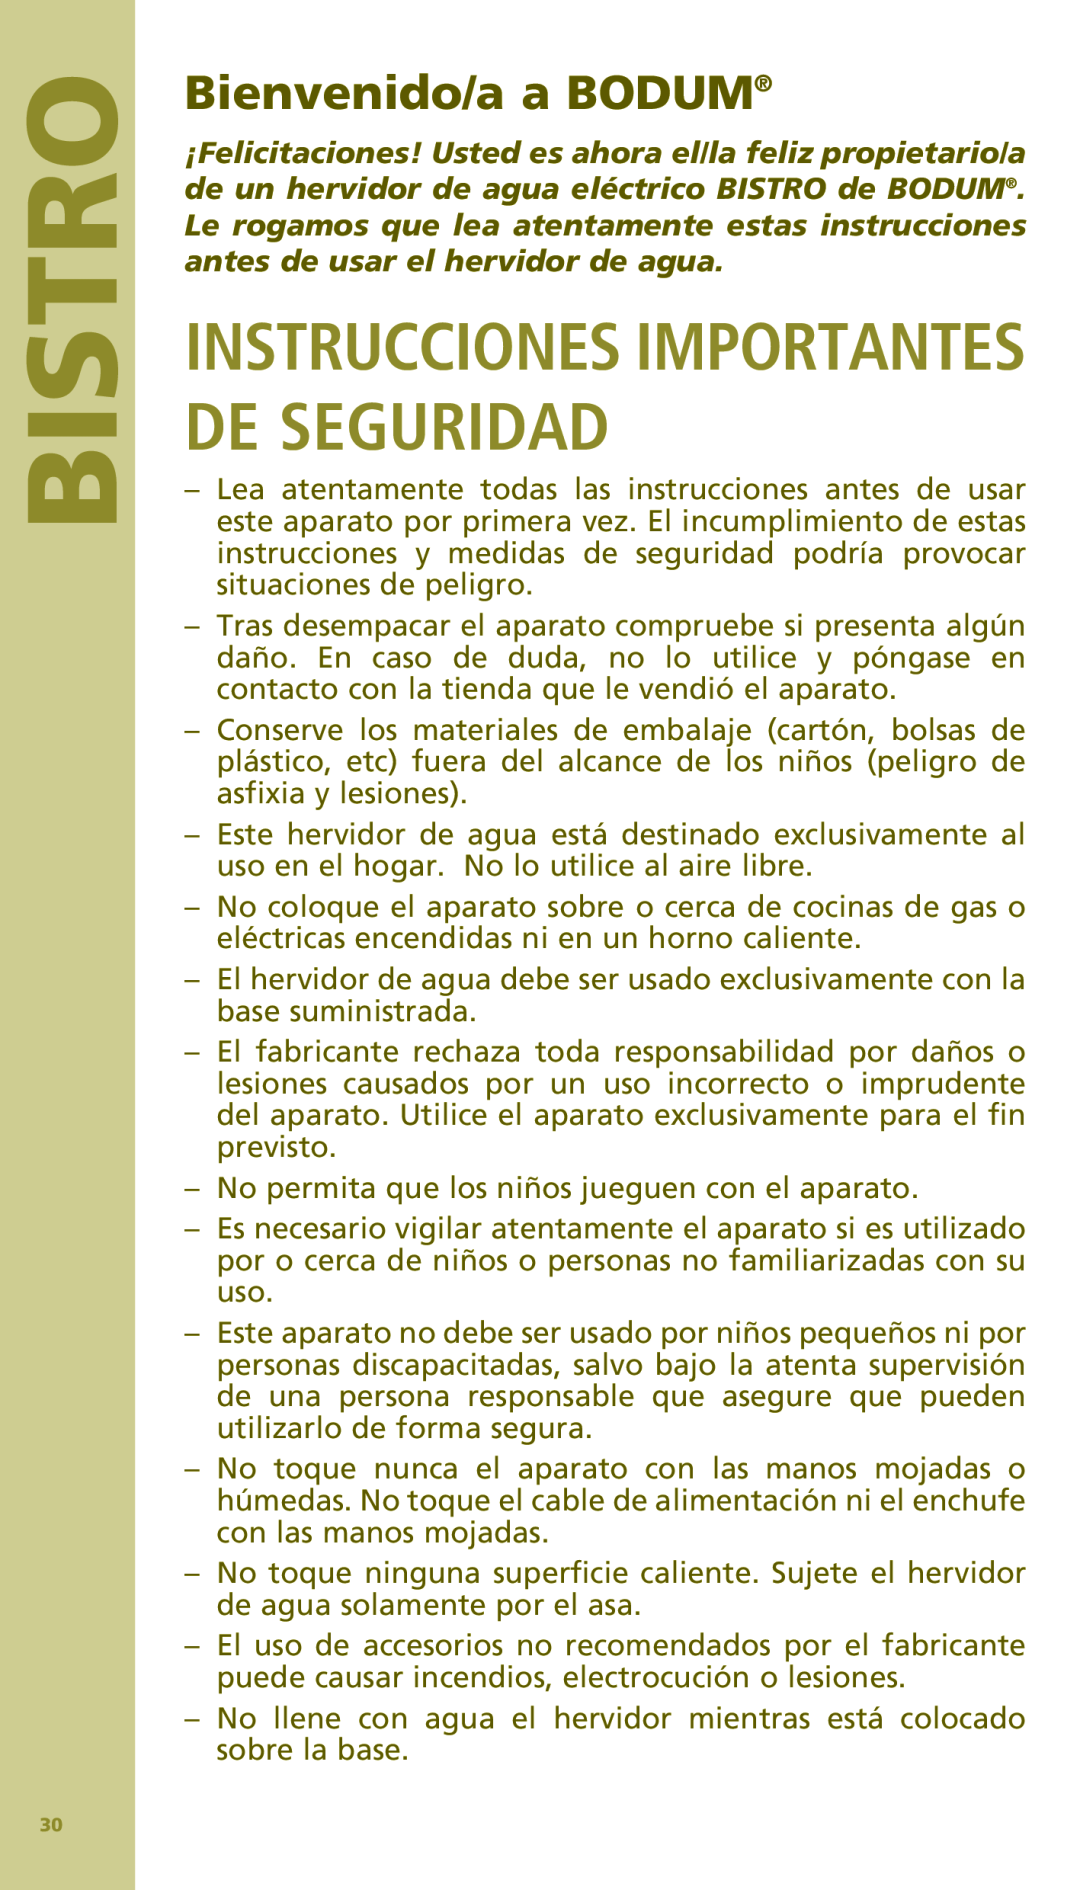 Bodum 11154 manual Instrucciones Importantes De Seguridad, Bienvenido/a a BODUM, Bistro 